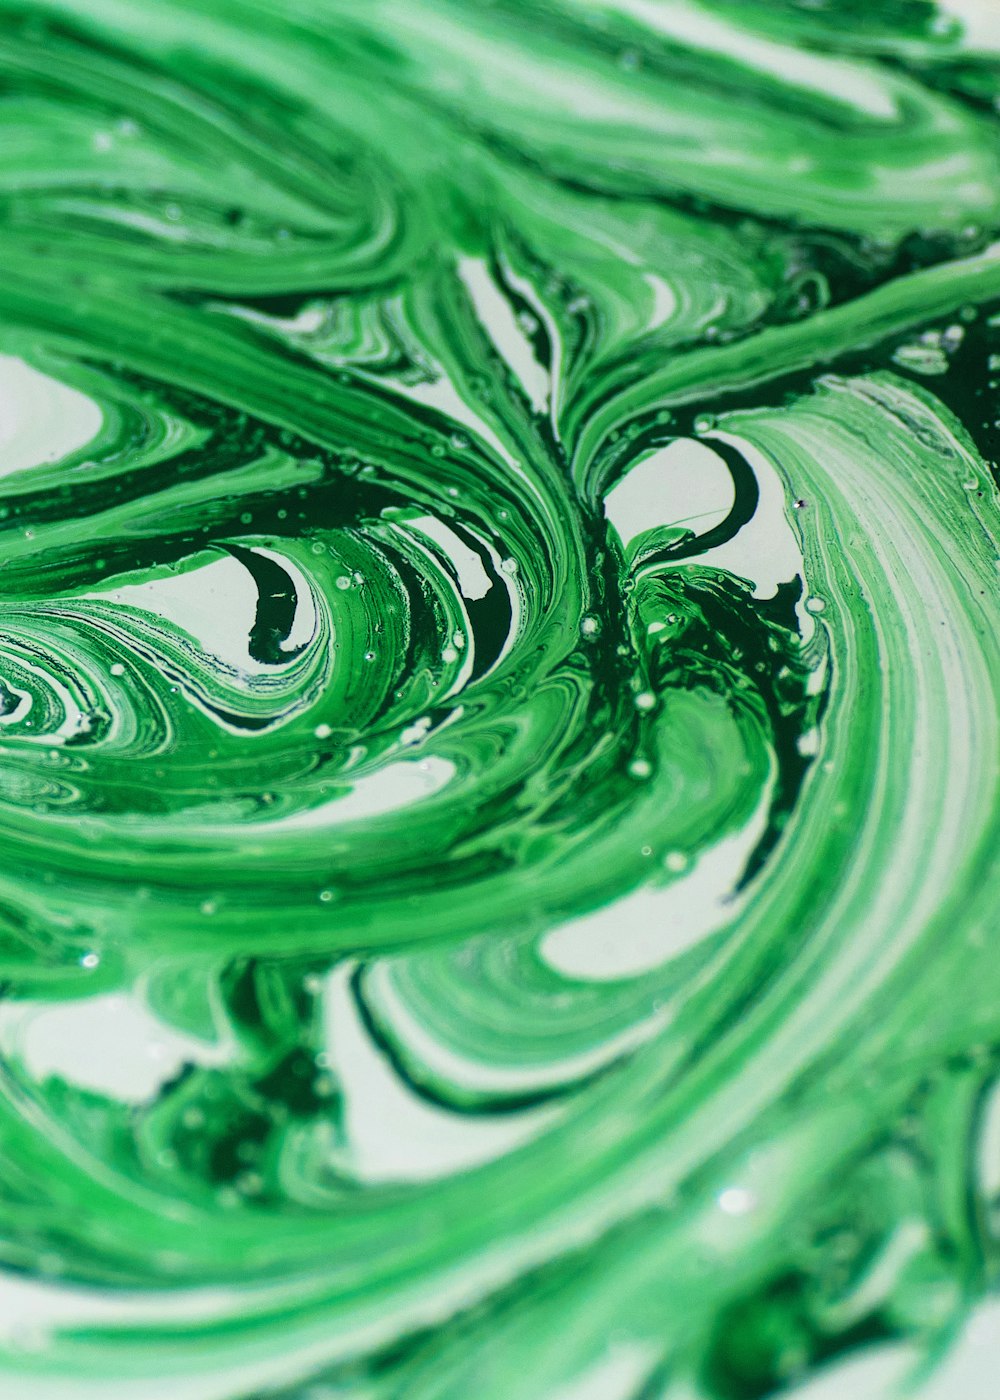 Grüne und weiße abstrakte Malerei